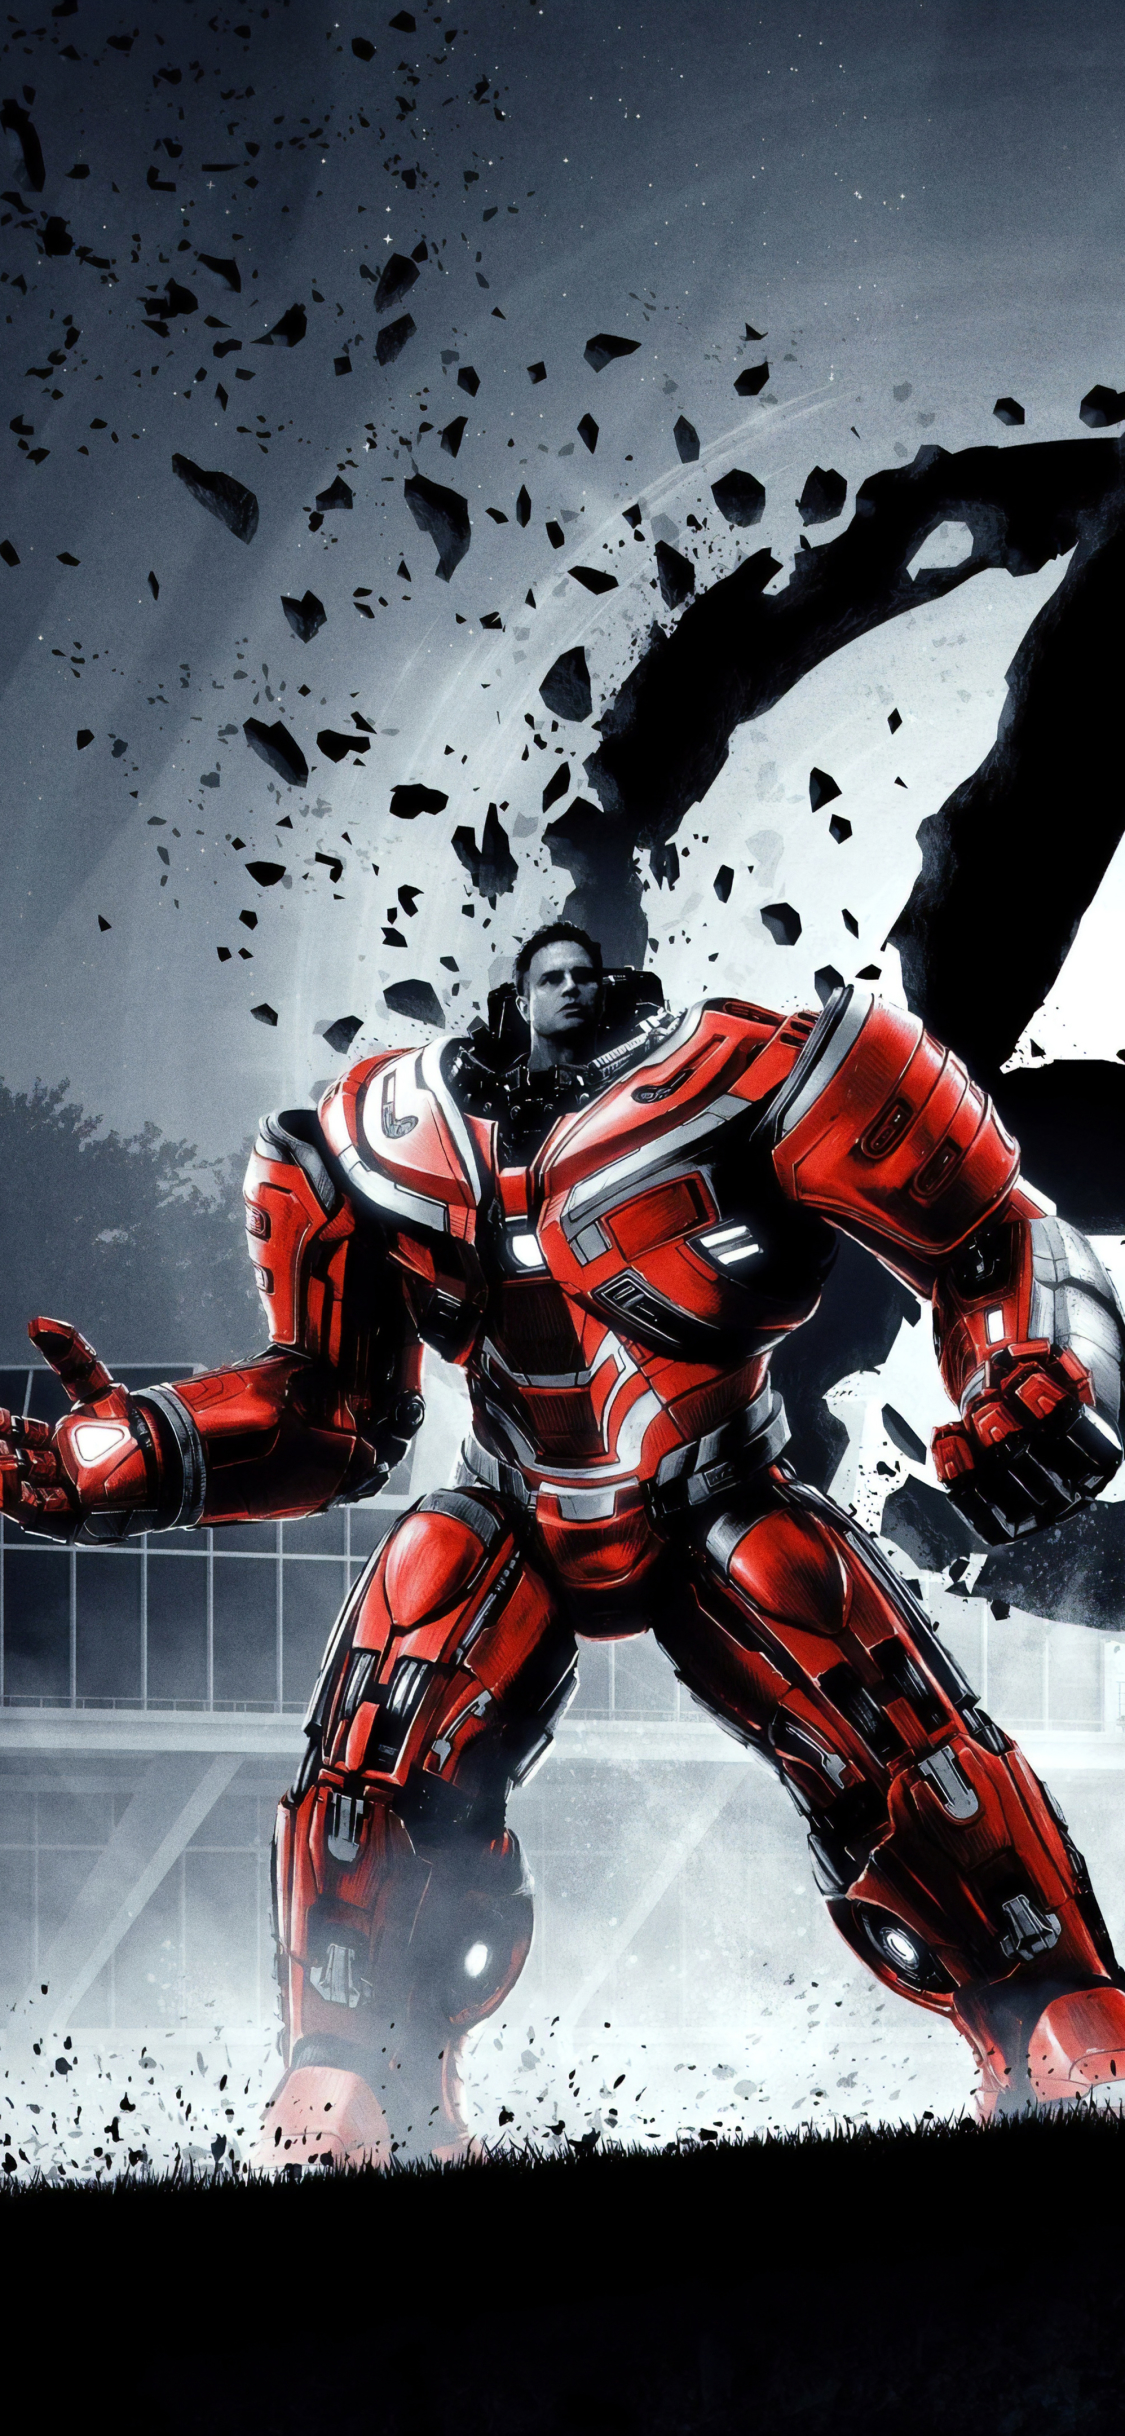 Descarga gratuita de fondo de pantalla para móvil de Los Vengadores, Películas, Marca Ruffalo, Hulkbuster, Vengadores: Endgame, Vengadores.